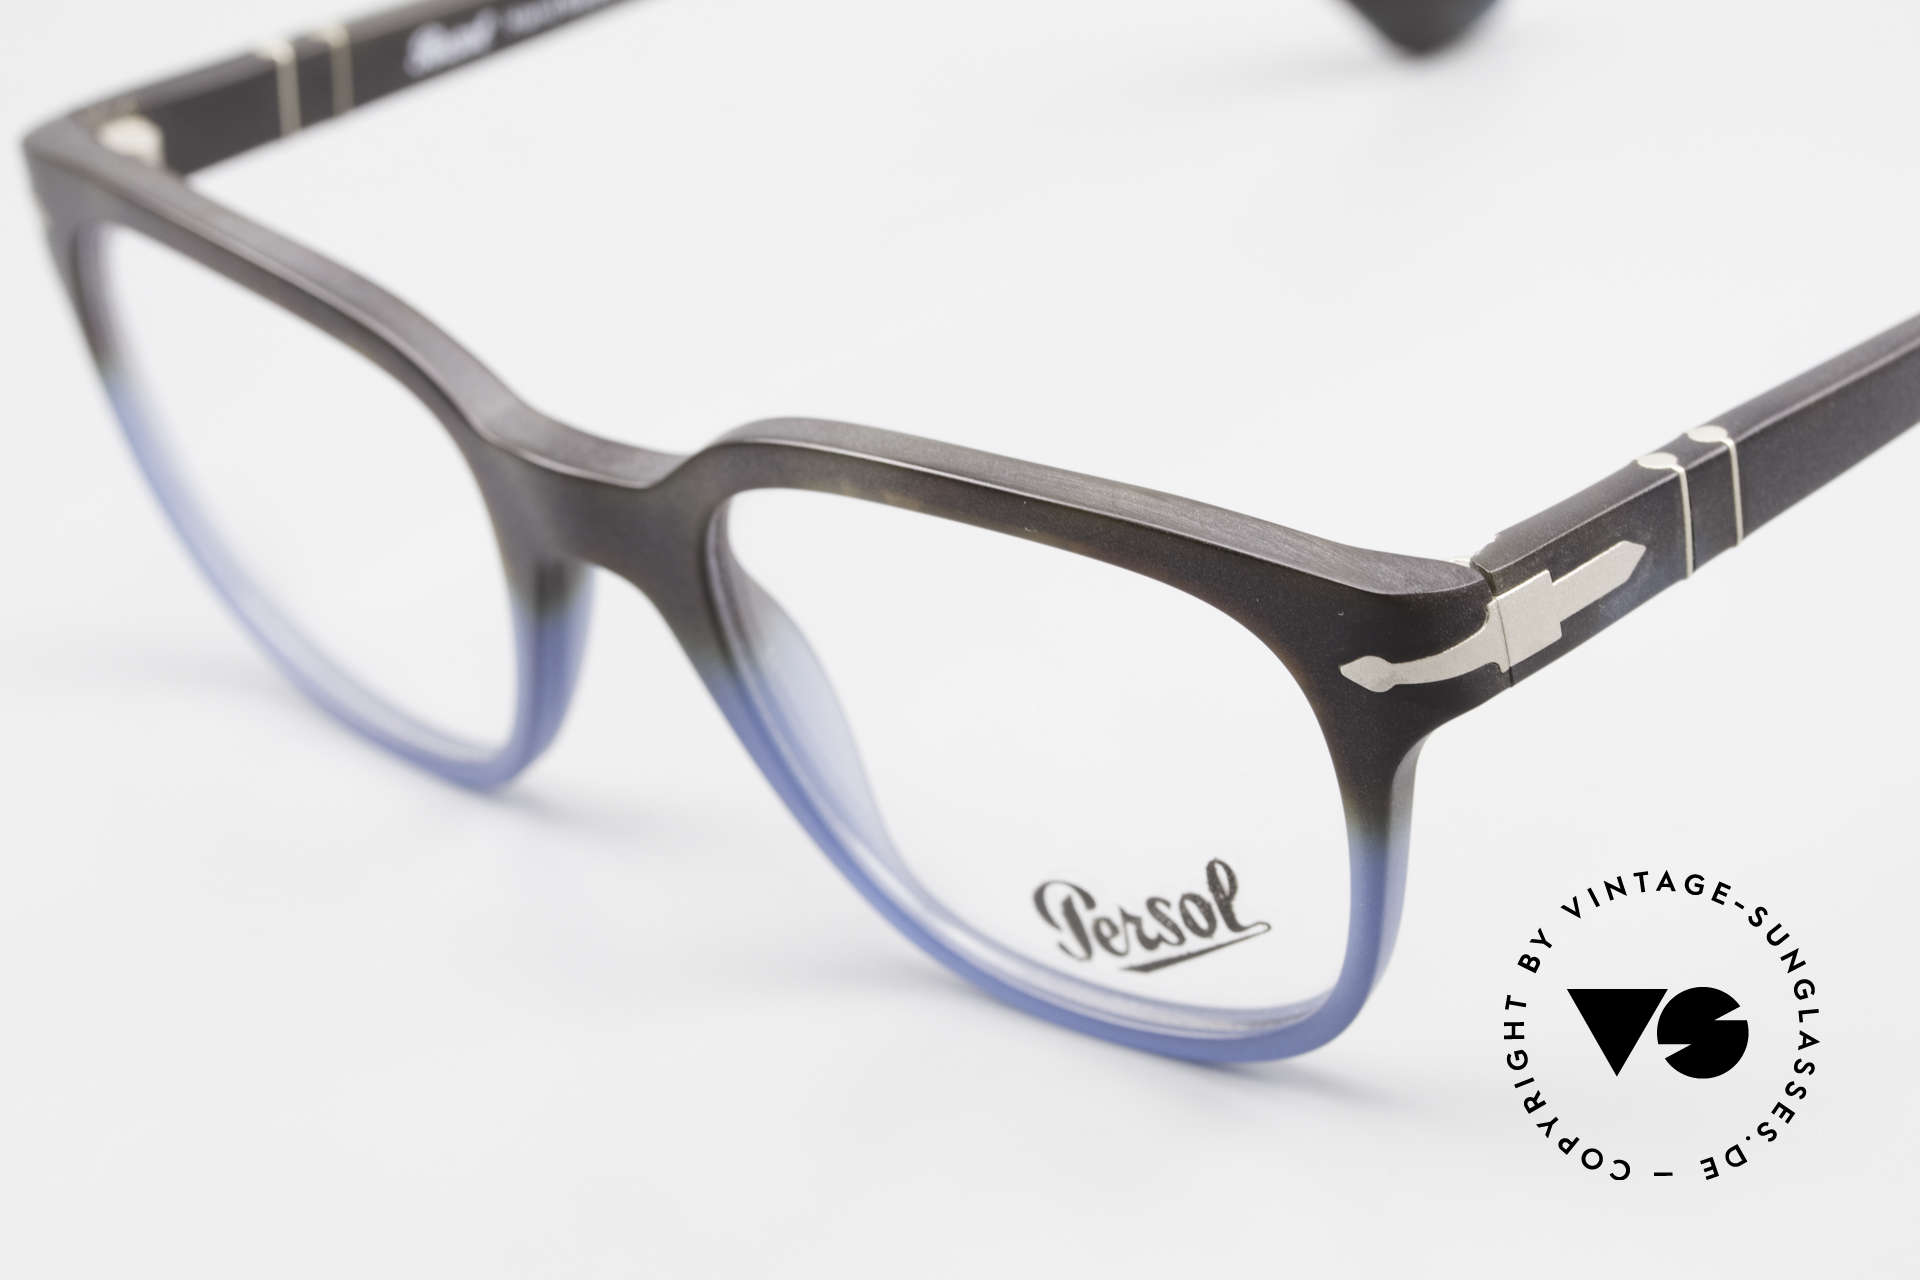 Persol 3093 Brille Für Damen und Herren, ungetragen (wie alle unsere Persol vintage Brillen), Passend für Herren und Damen